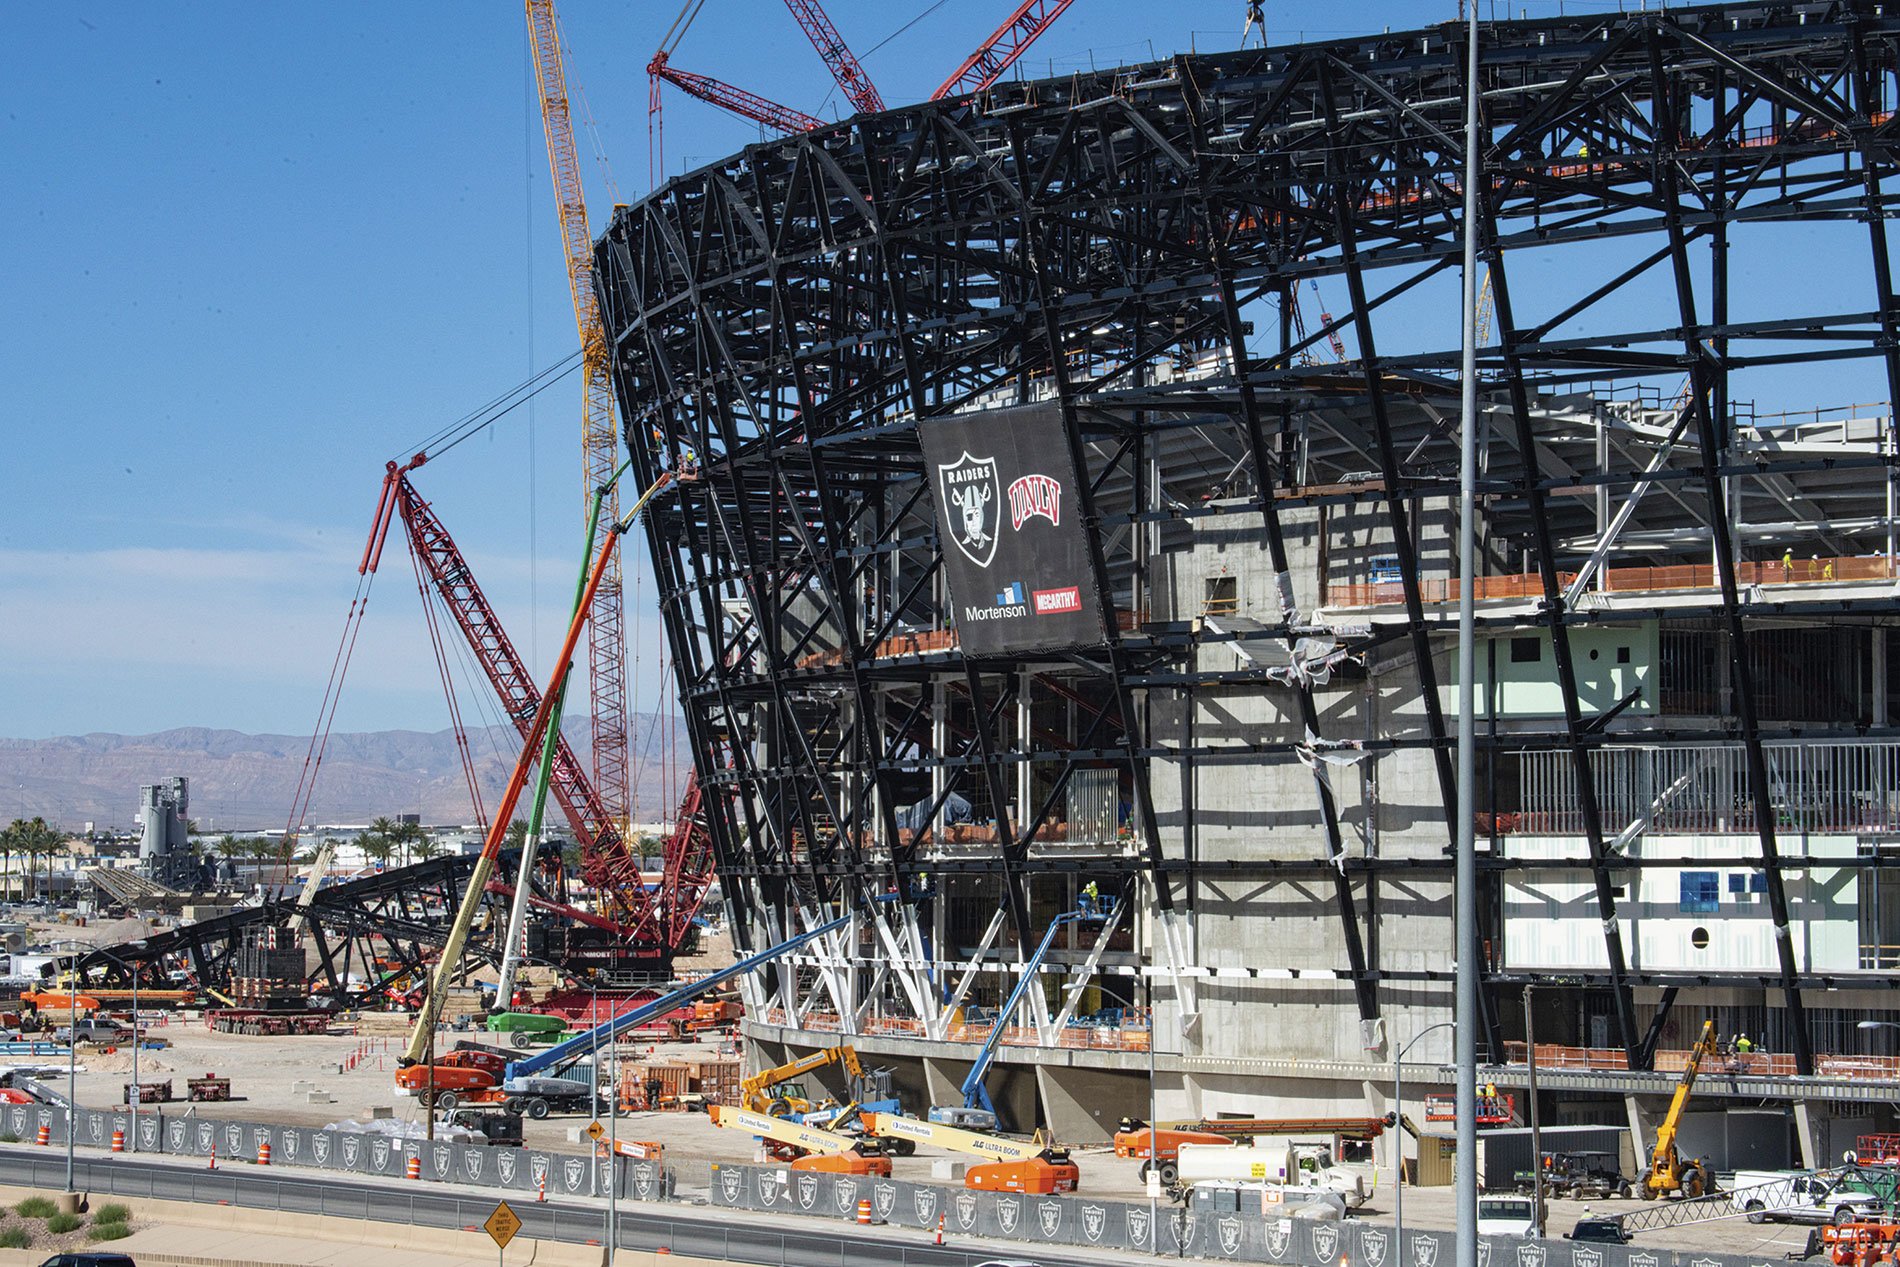 Raiders file to power Las Vegas Stadium with alternative electric